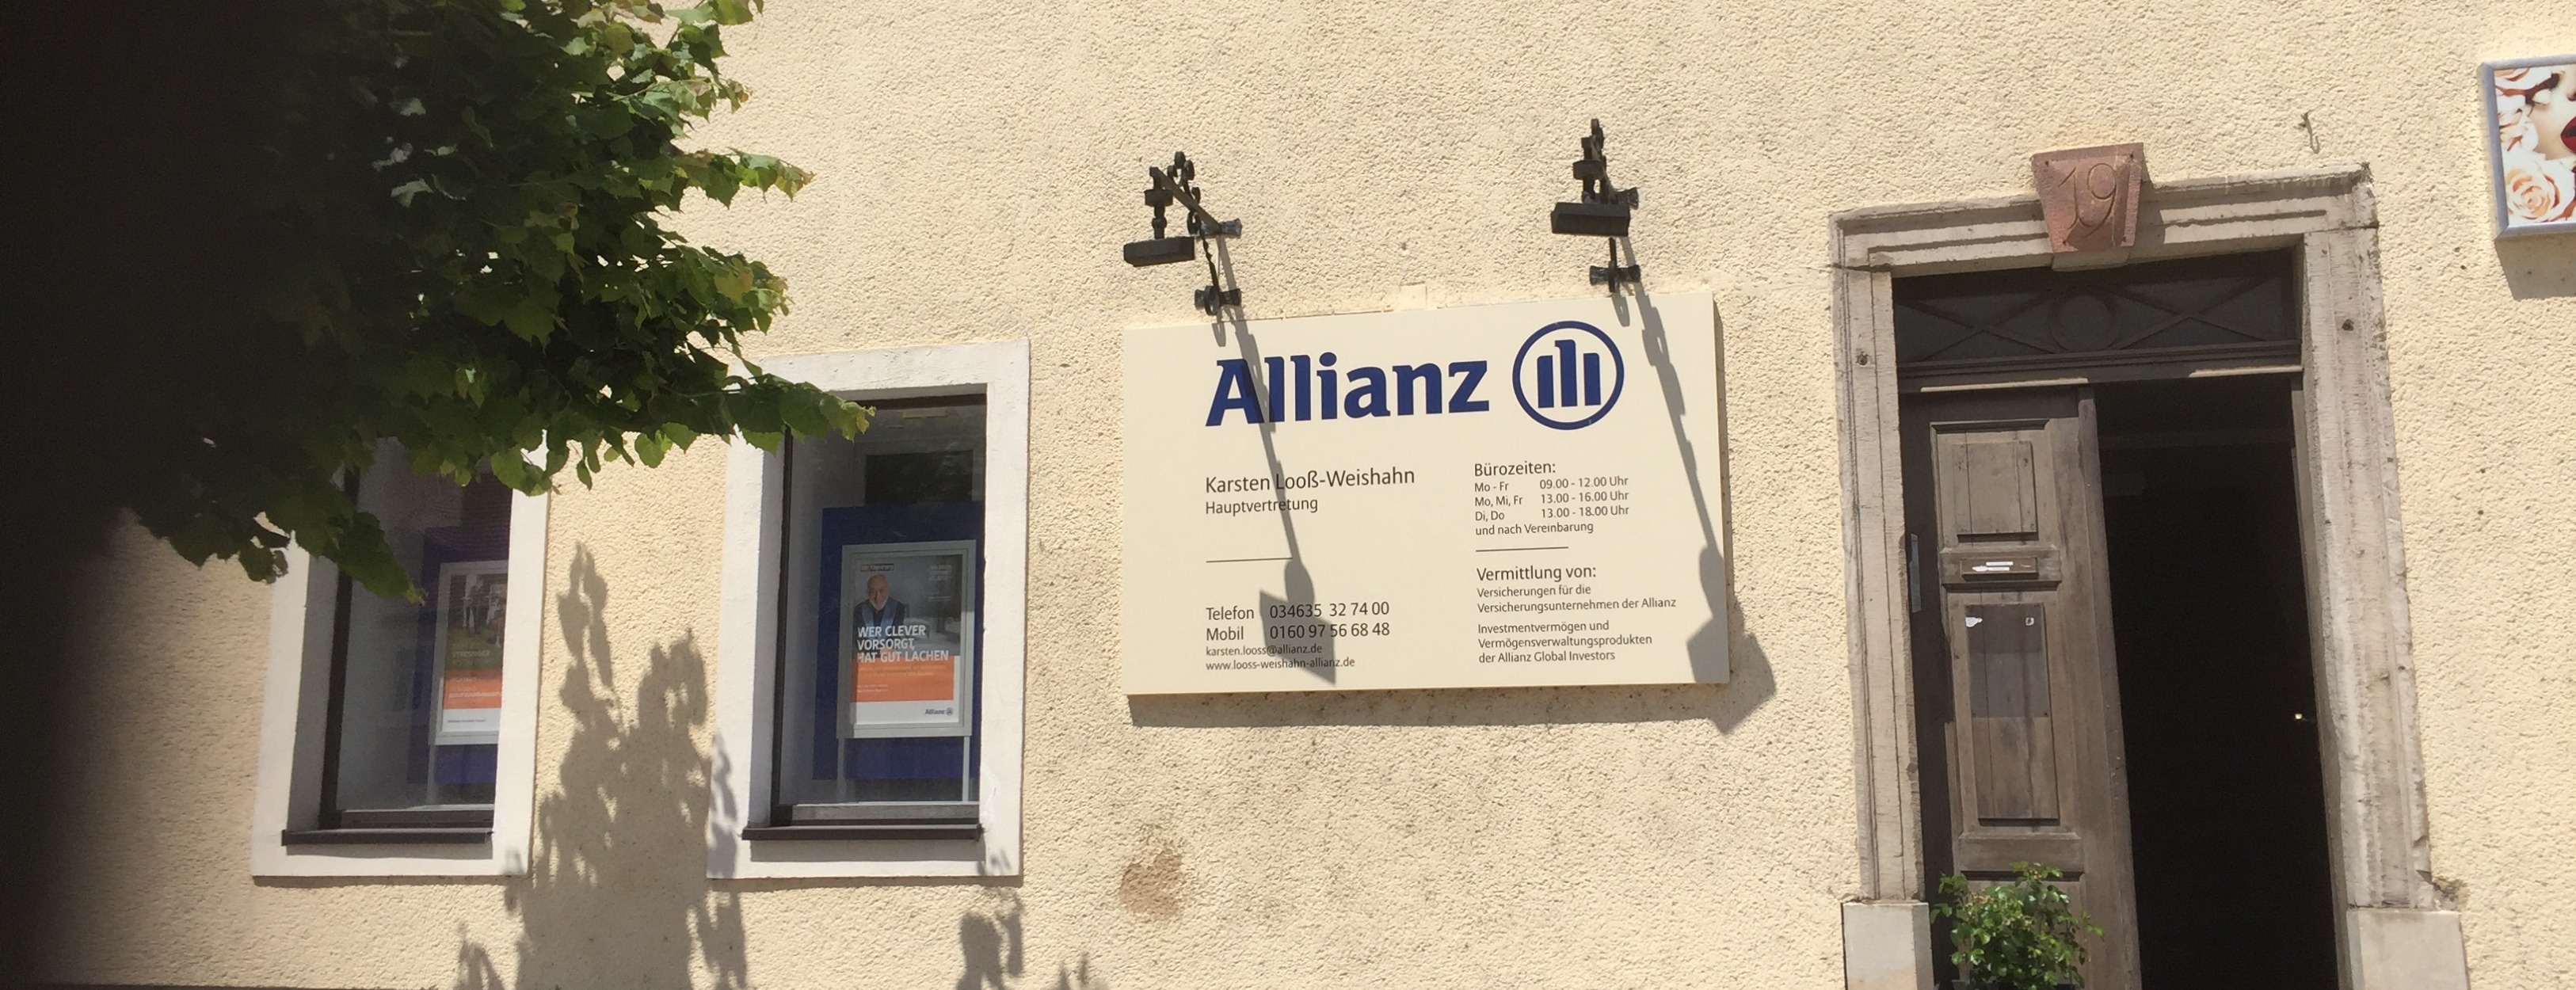 Allianz Versicherung Karsten Looß-Weishahn Bad Lauchstädt - Baufinanzierung Bad Lauchstädt Saalekreis Halle 